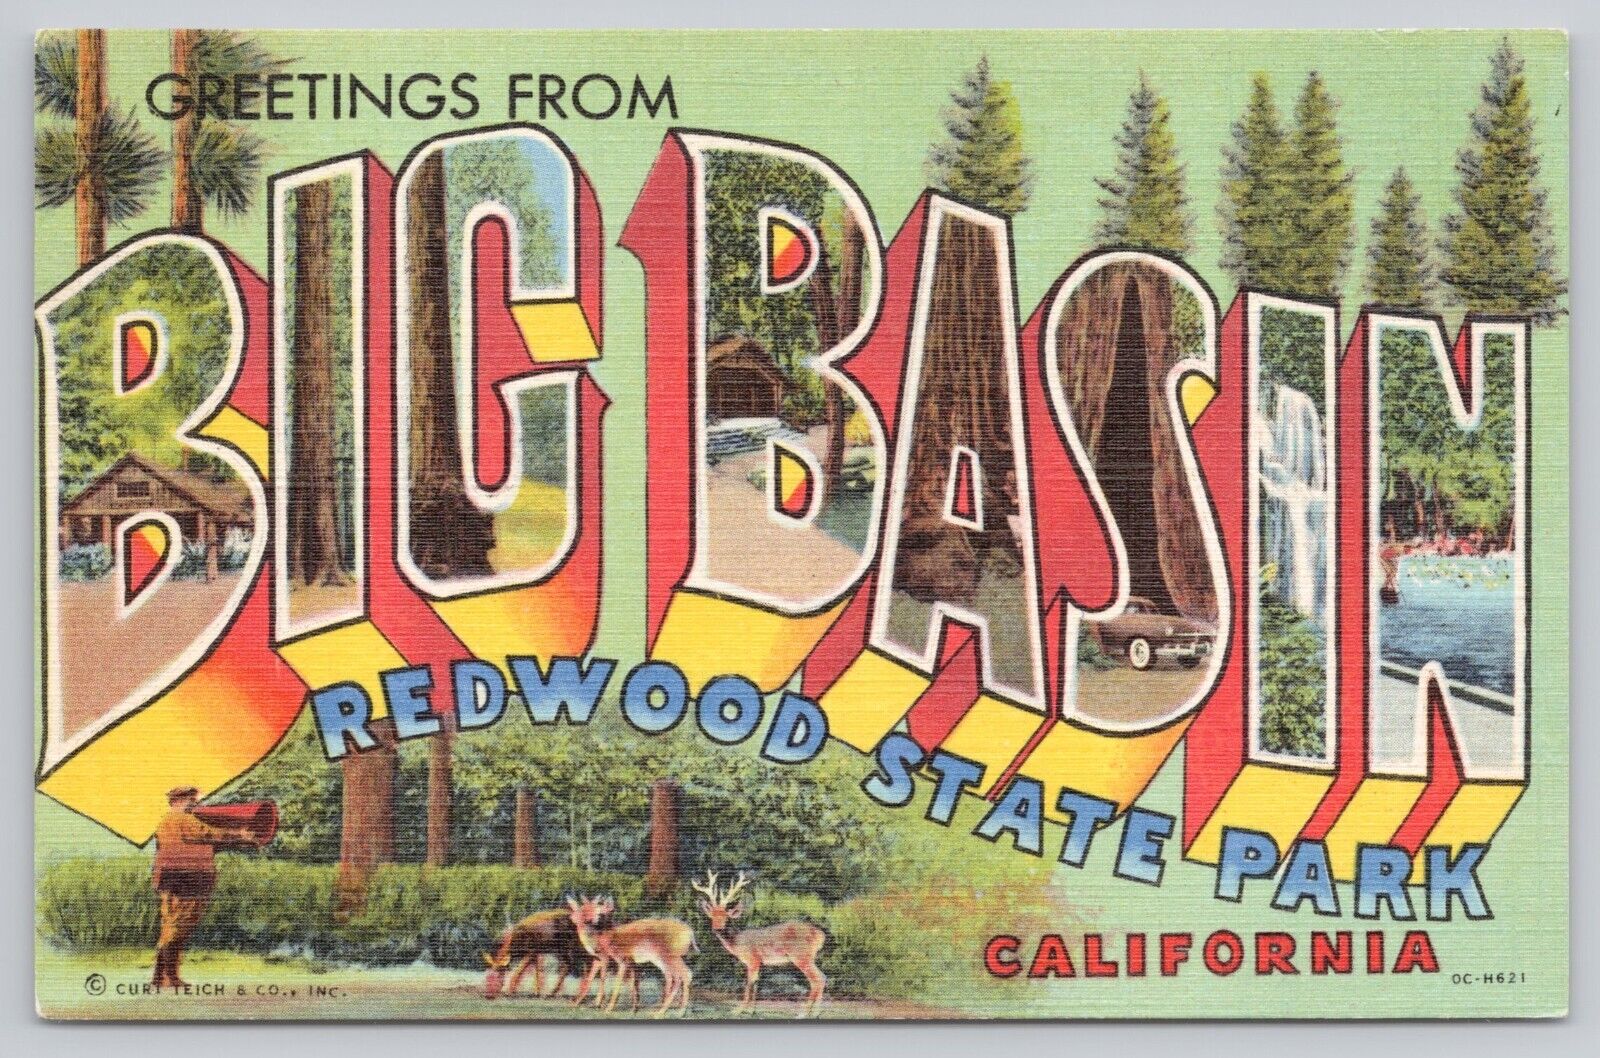 Big Basin Redwood State Park California, Large Letter Greetings Vintage Postcard